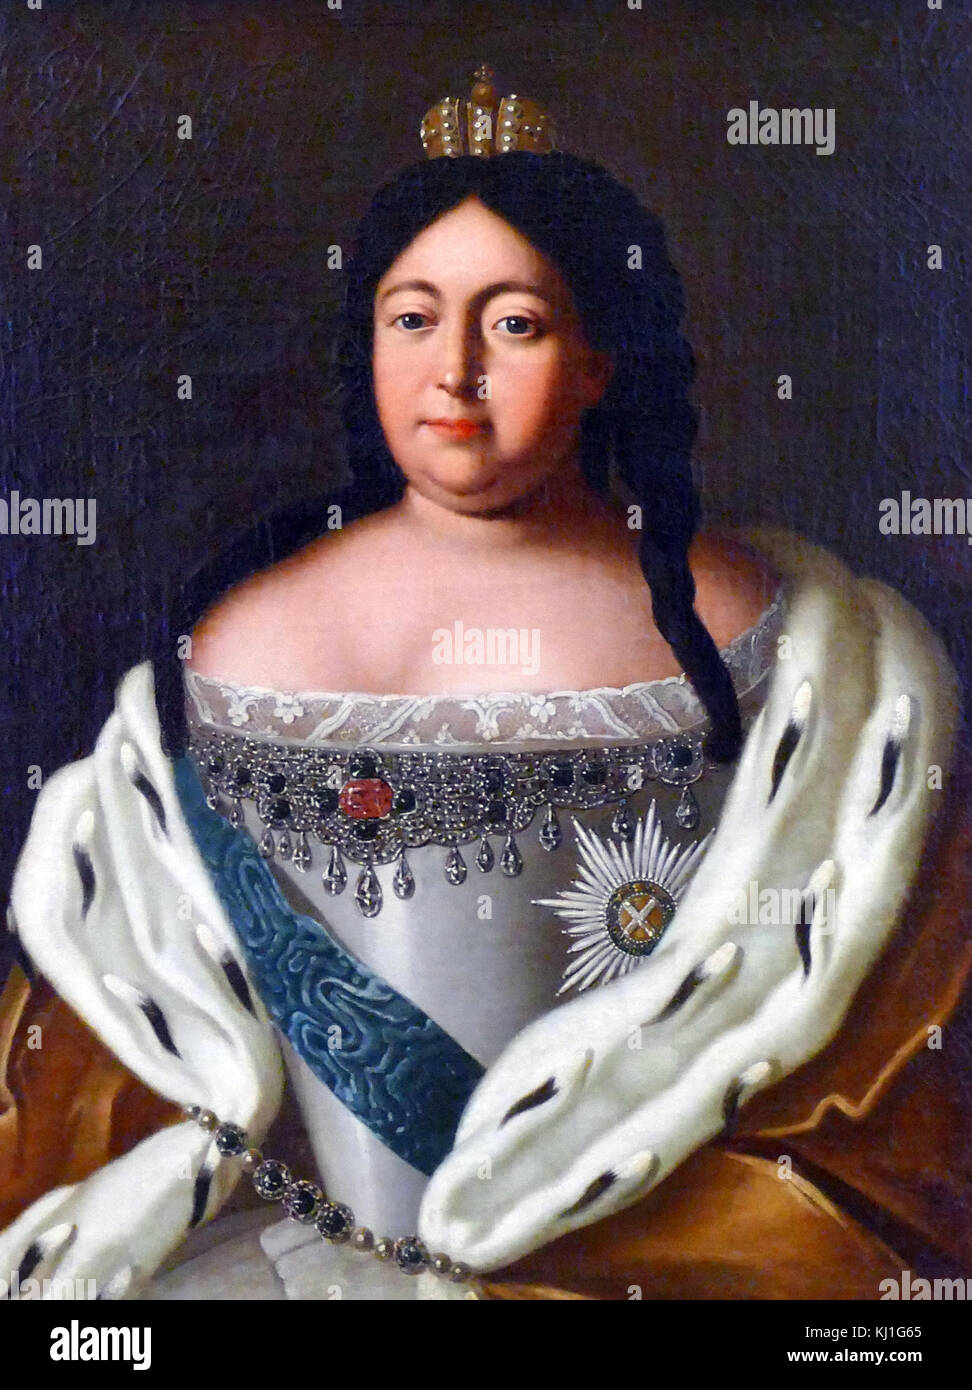 L'impératrice Anna Ioannovna, fille du tsar Ivan V de Russie et la nièce de Pierre le Grand. Anna Ionnovna (1693-1740) est devenue impératrice de Russie en 1730 Banque D'Images